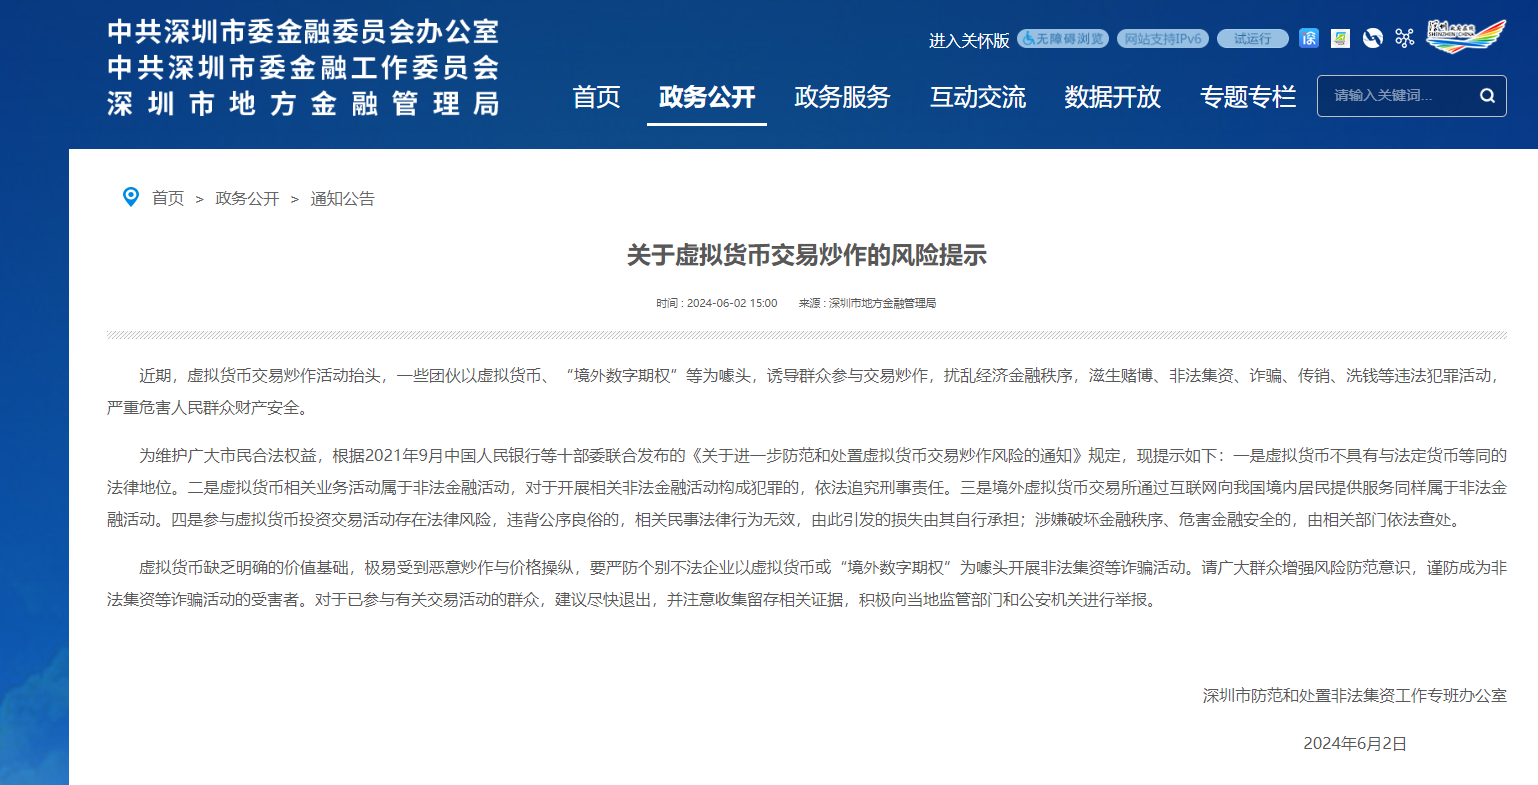 深圳市地方金融管理局發布《關於虛擬貨幣交易炒作的風險提示》